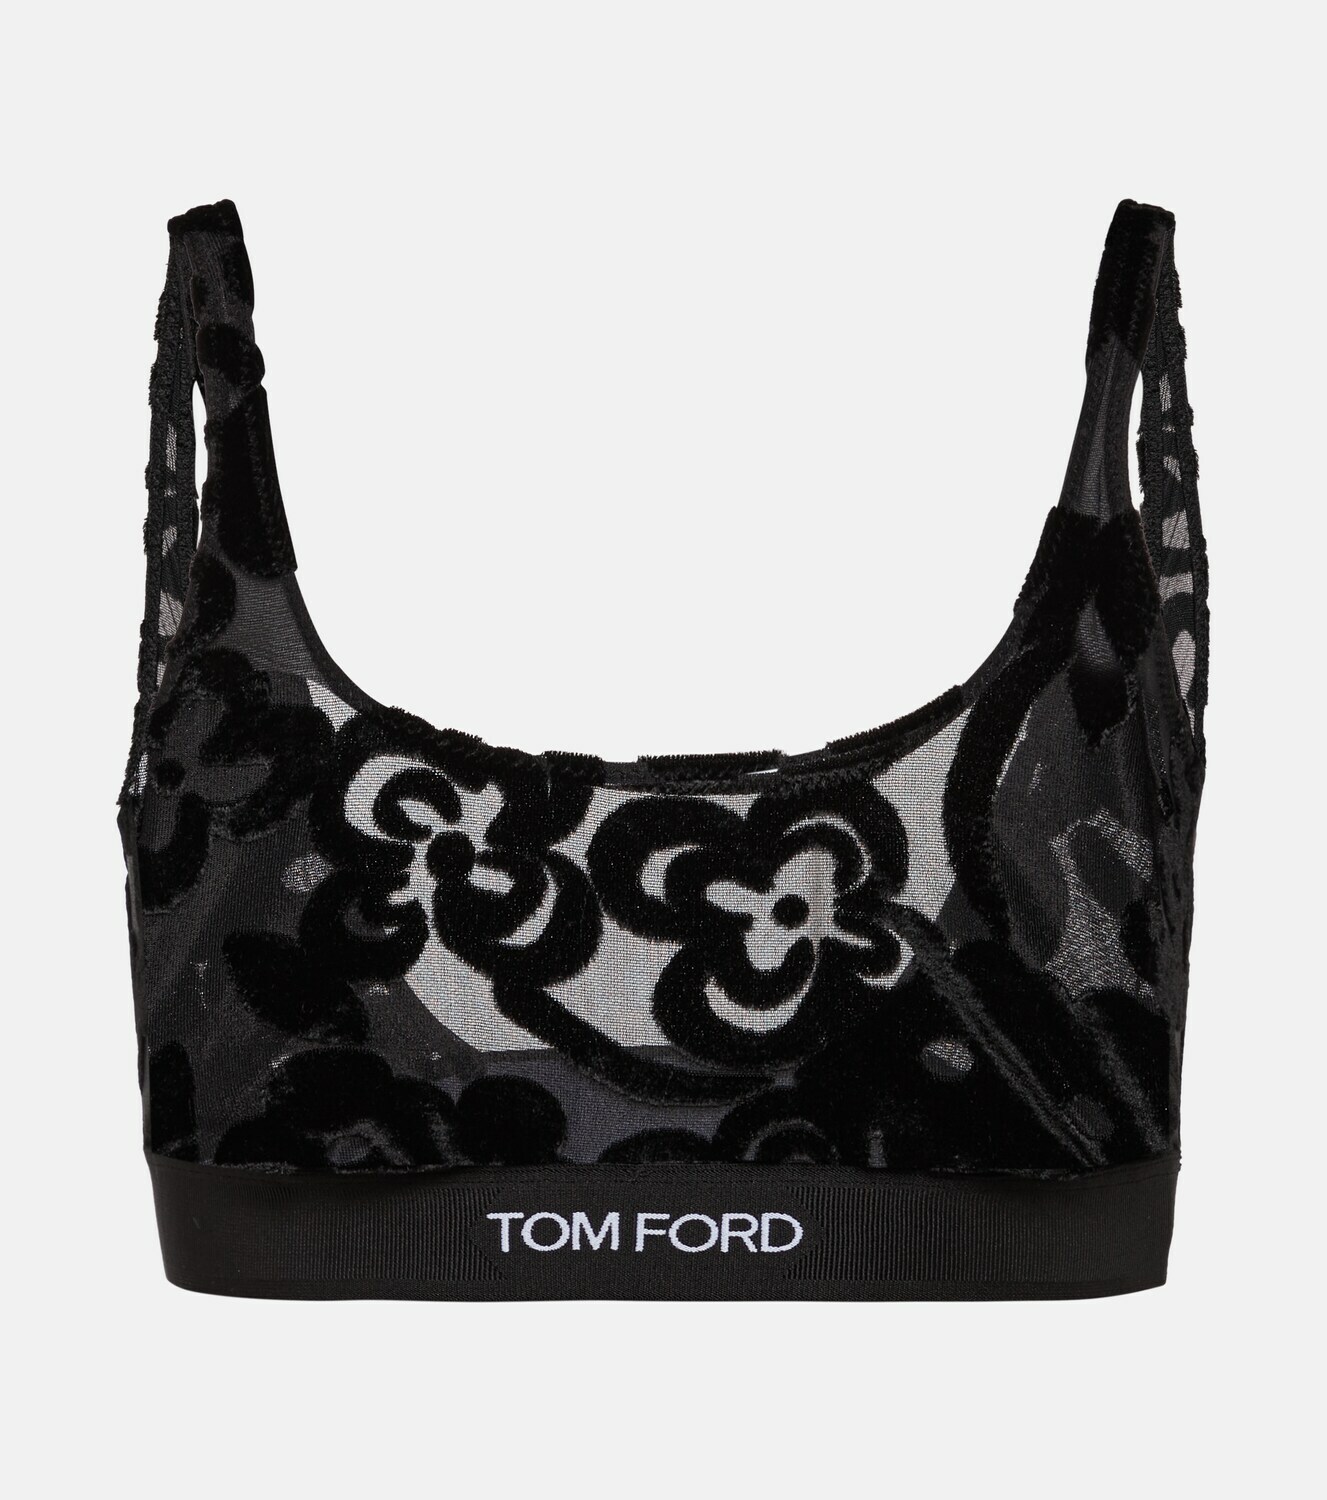 Tom Ford - Floral tulle devoré bralette TOM FORD